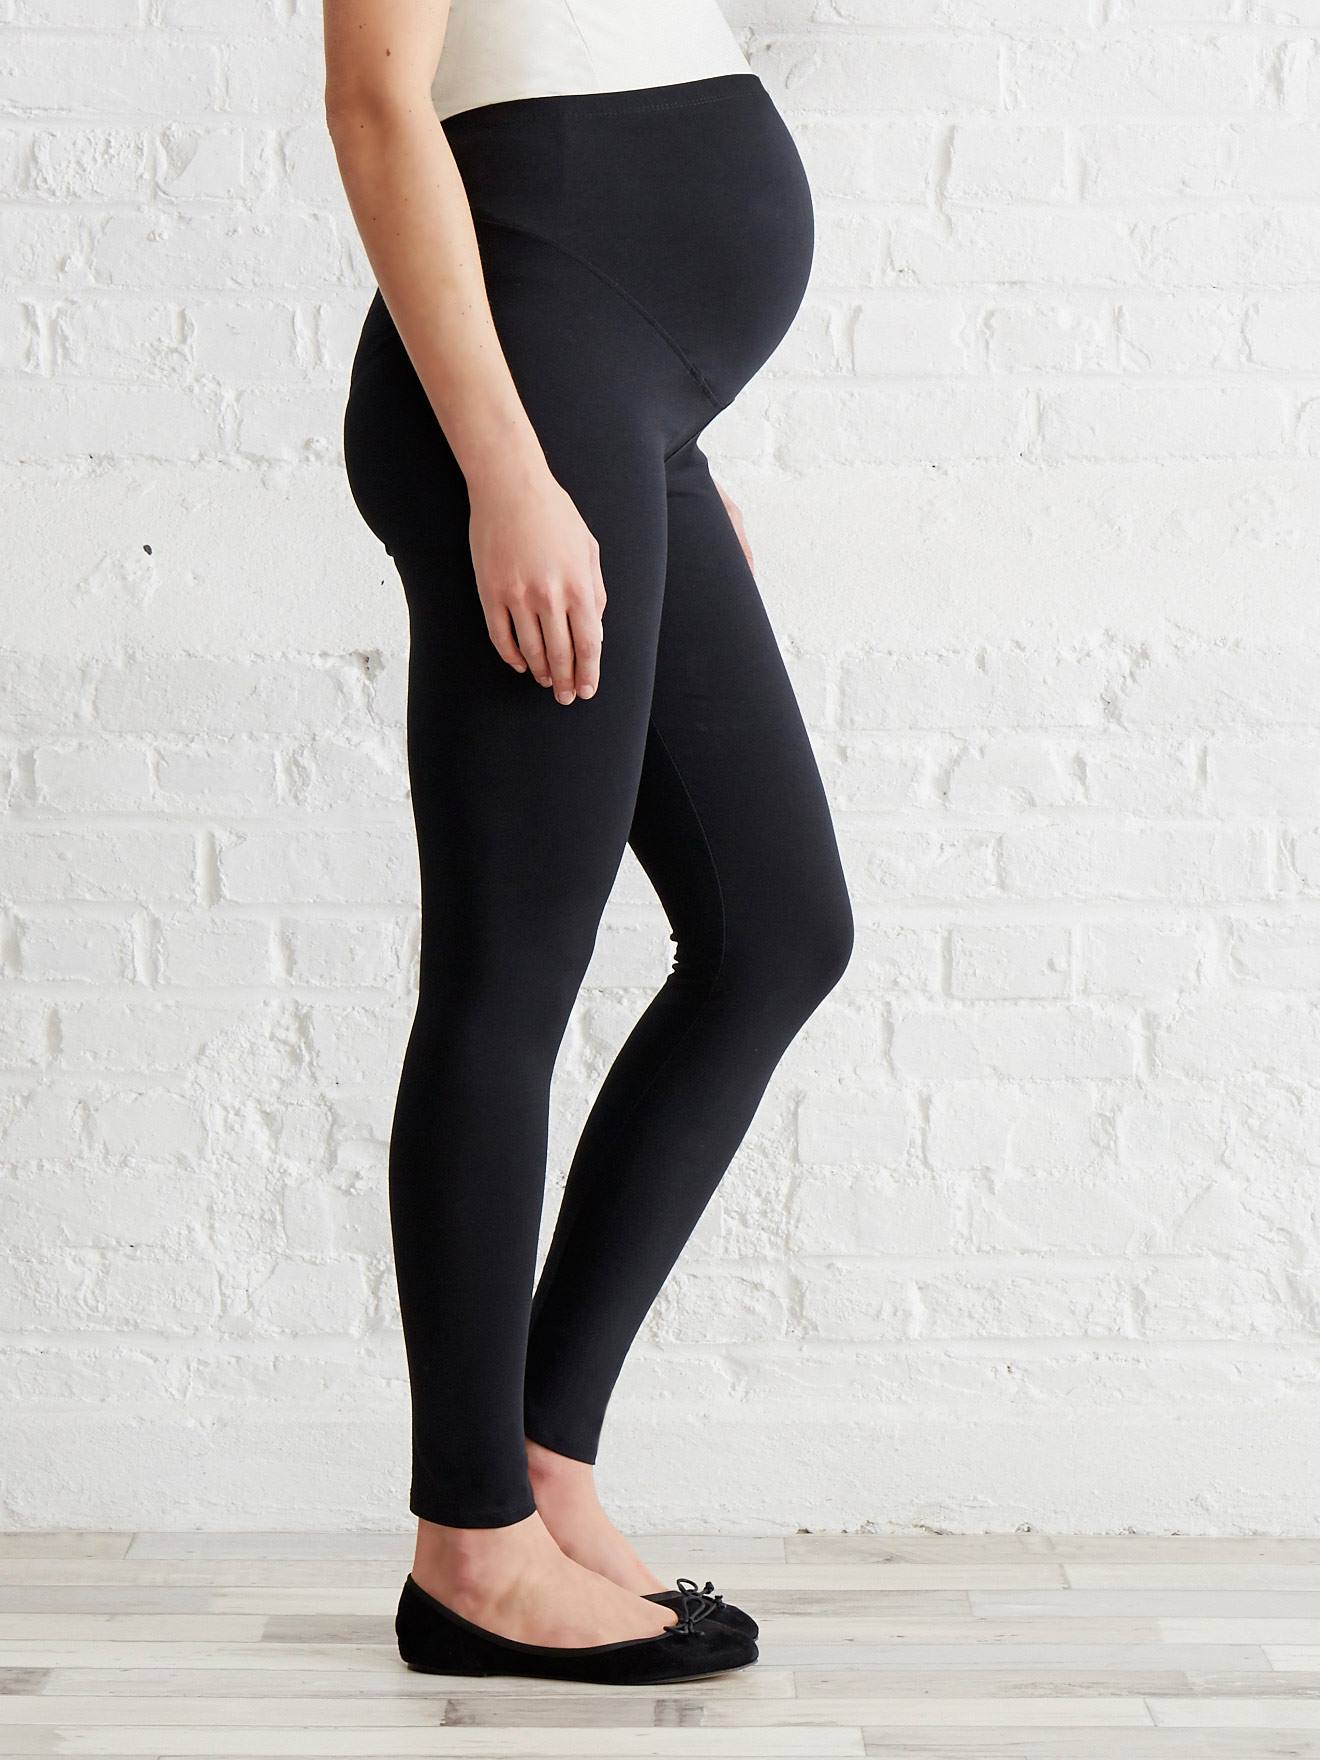 legging de grossesse / legging femme enceinte / vêtements de grossesse  TAILLE LETTRES S Couleur Noir